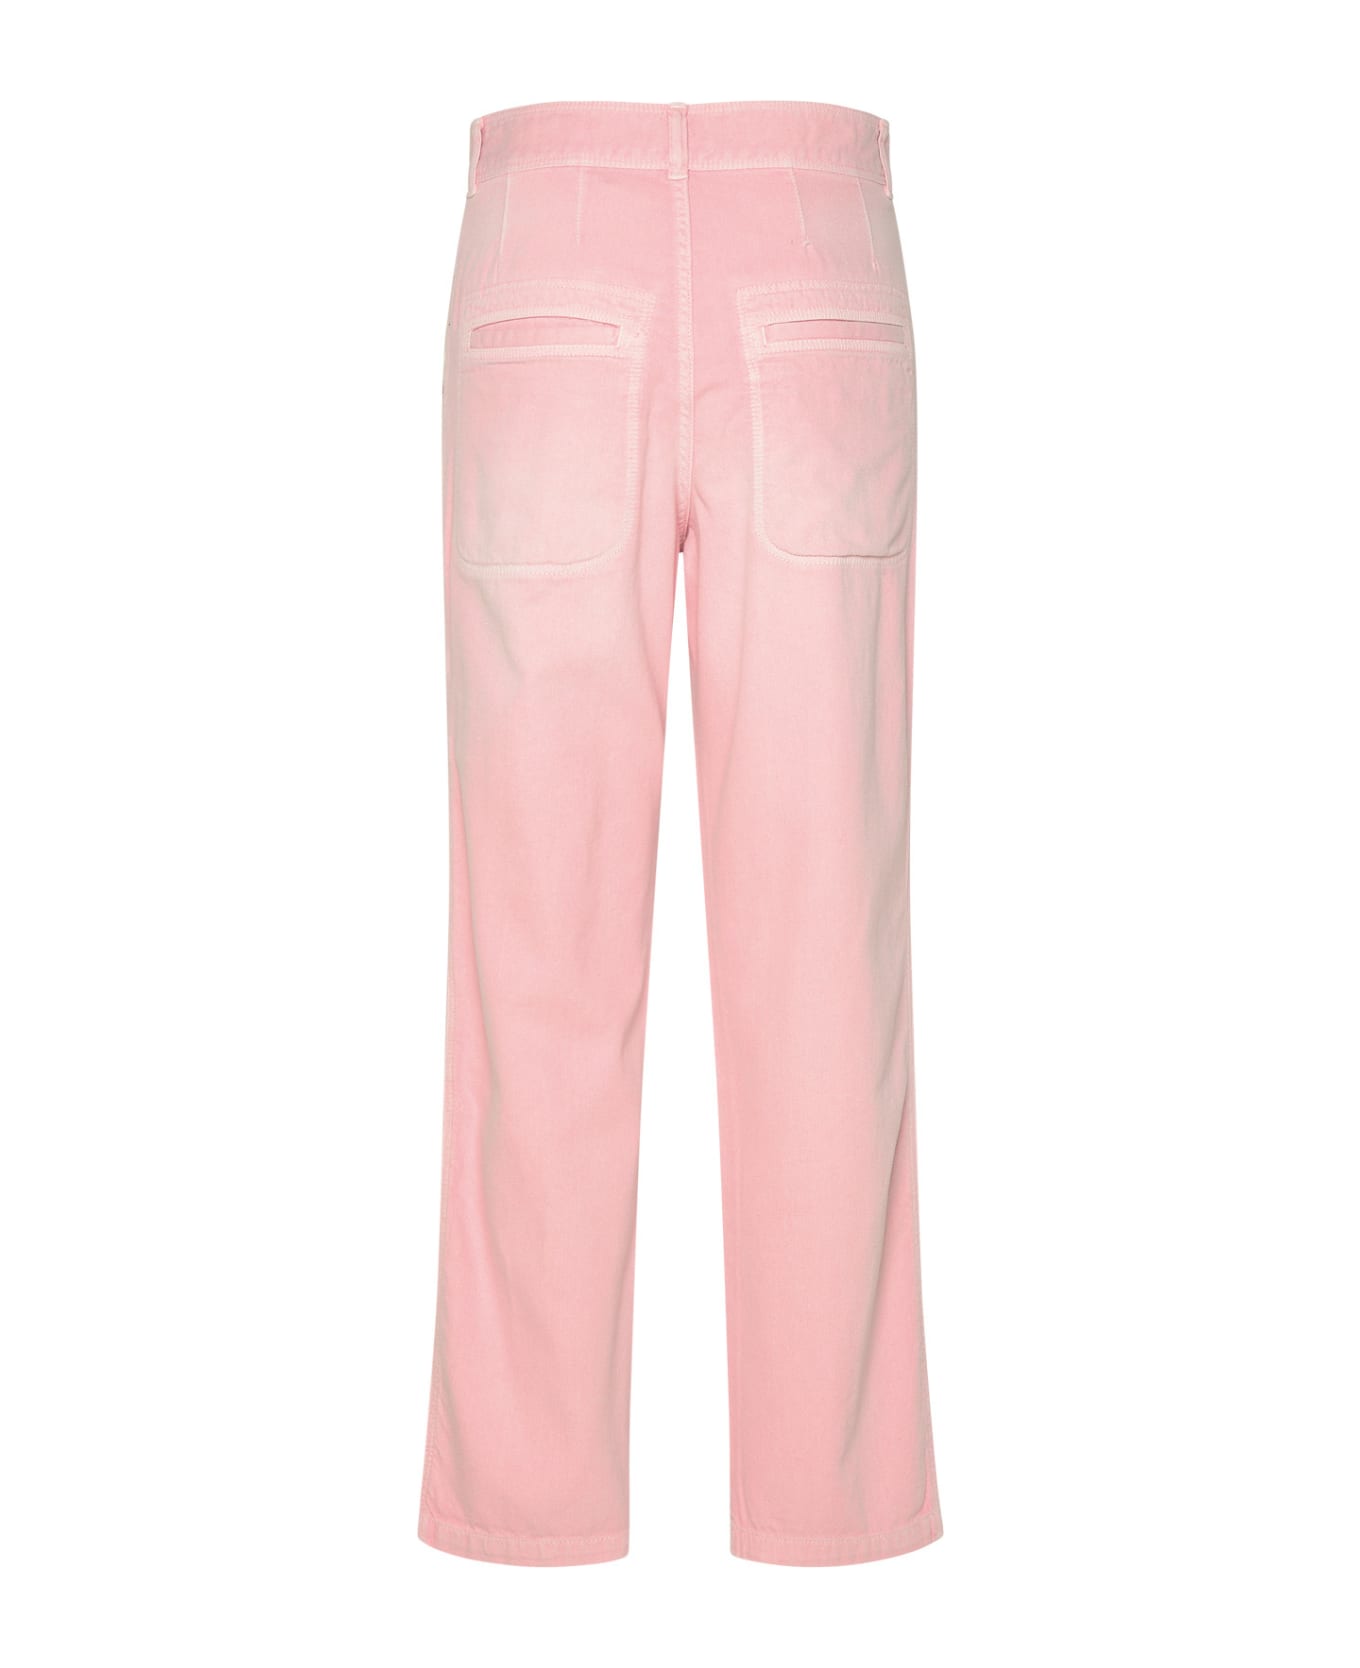 Isabel Marant 'juliette' Pink Cotton Pants - Pink